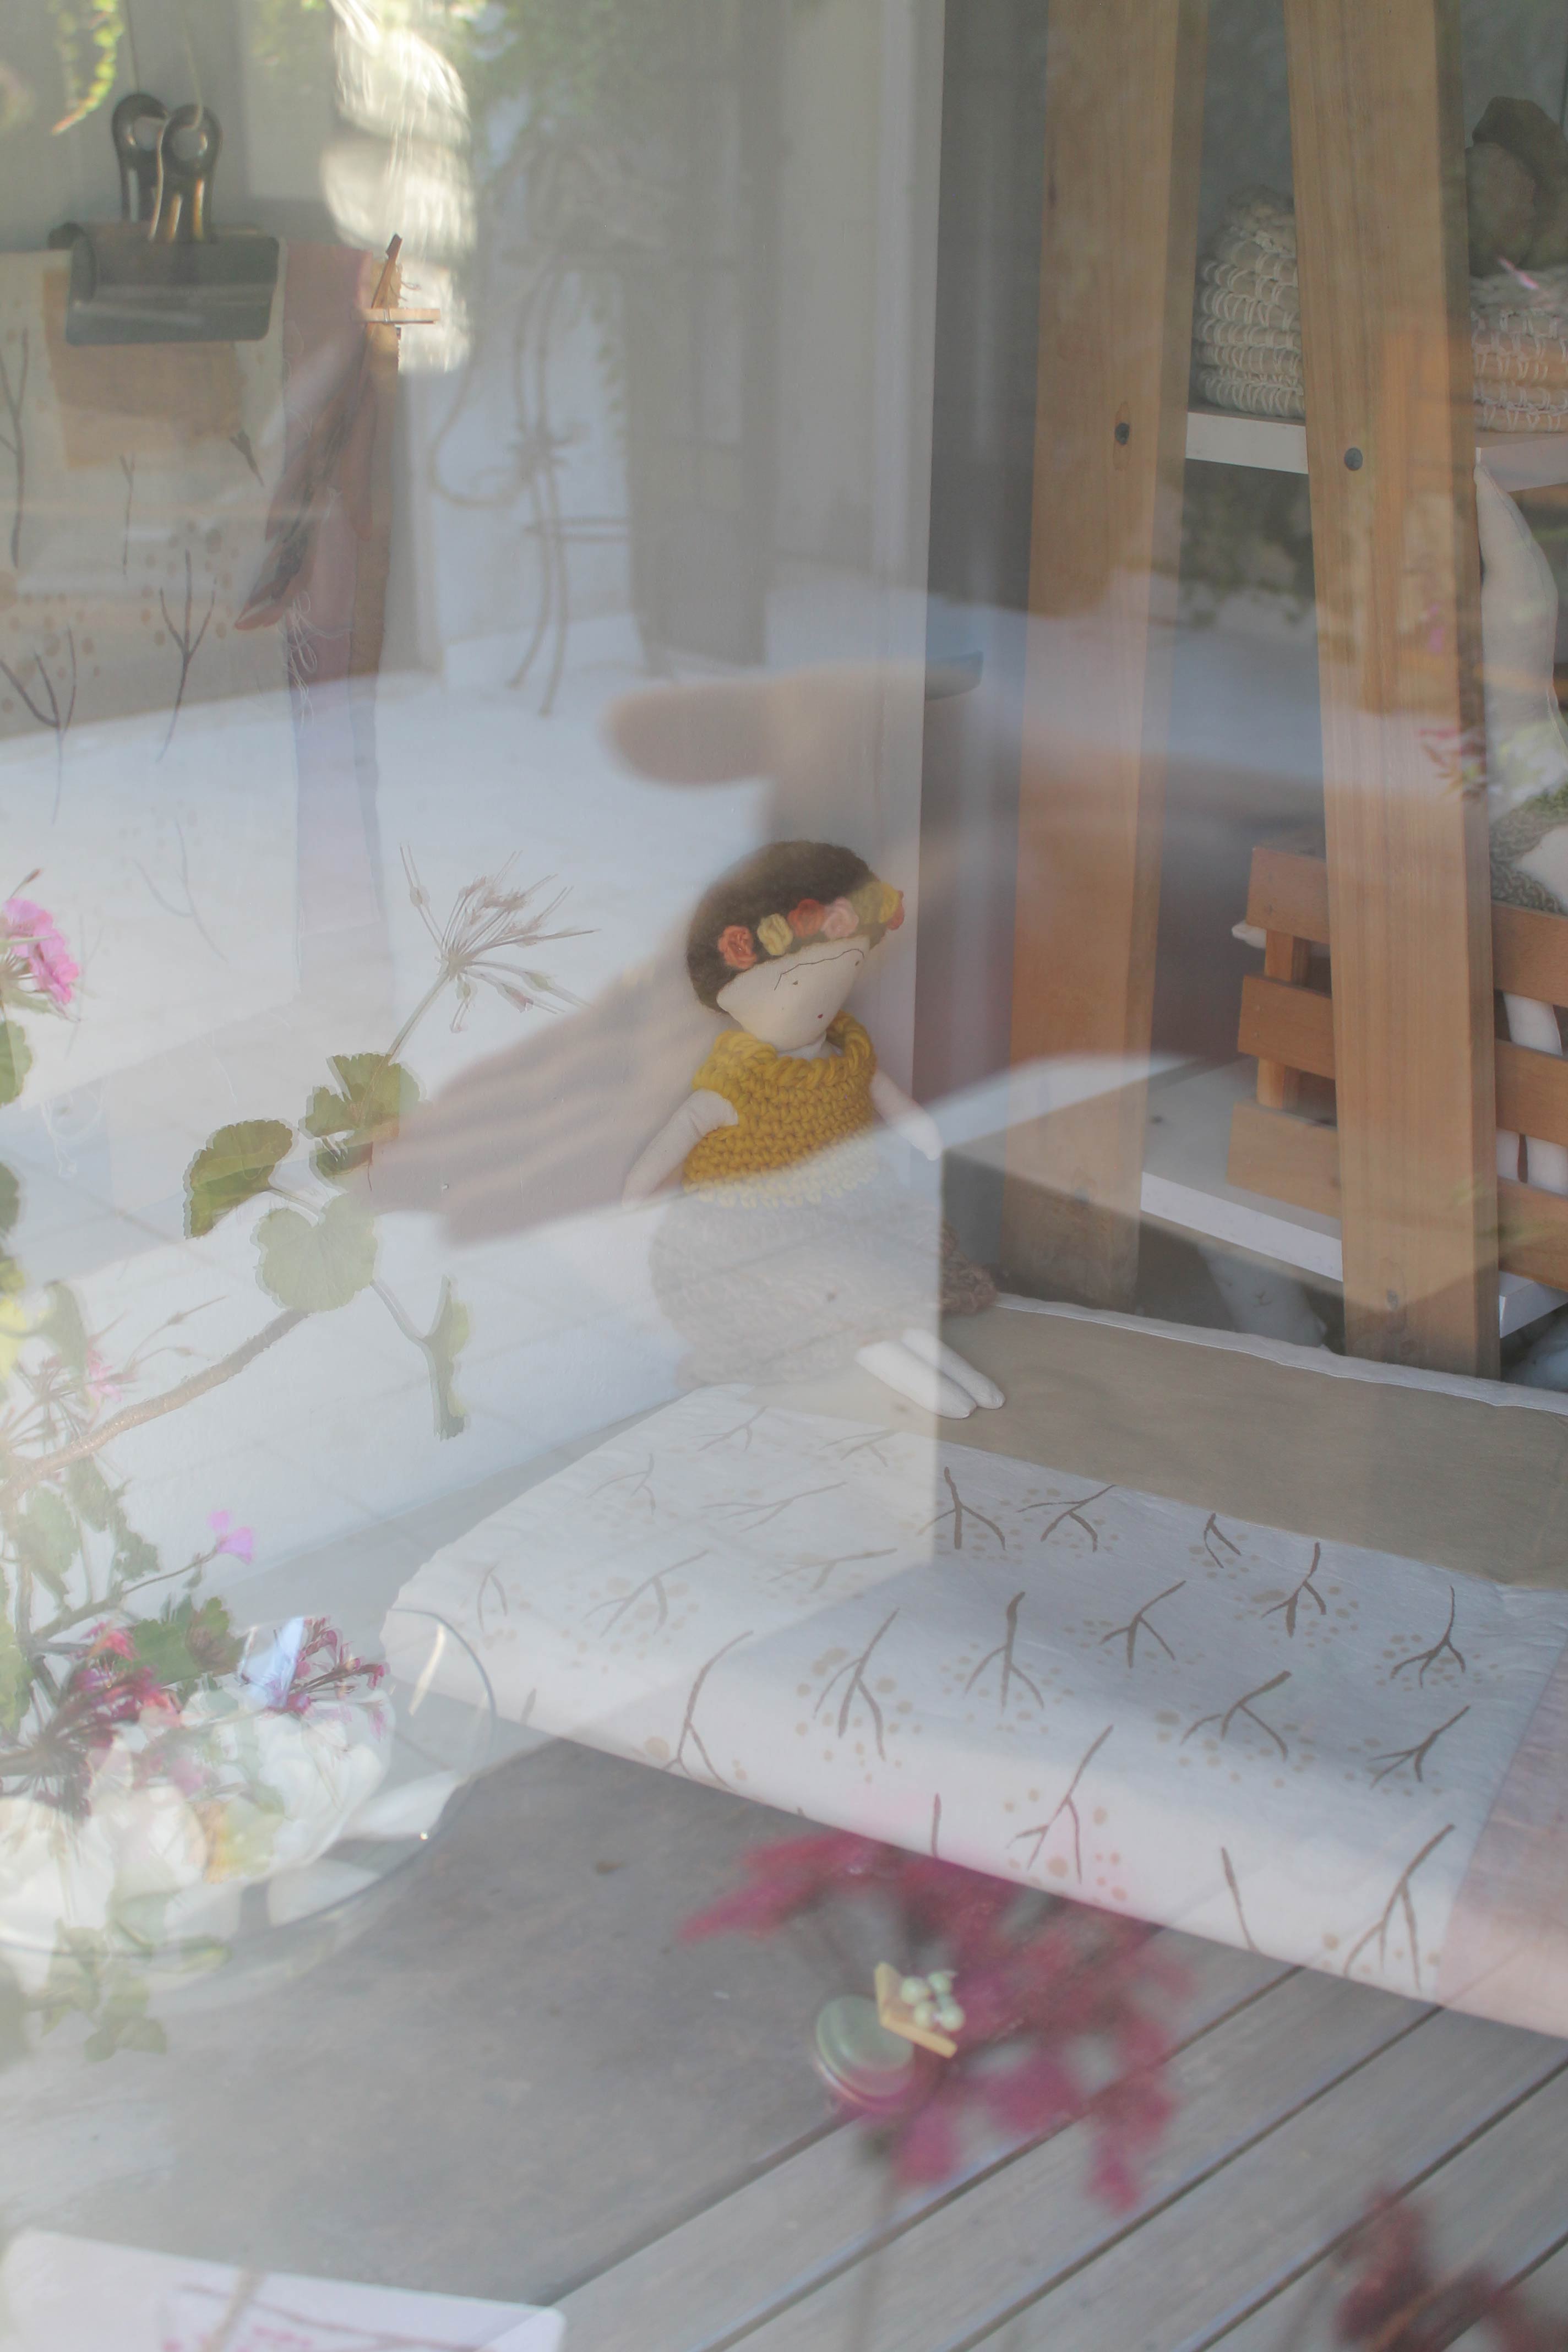 Frida vista através de un vidrio